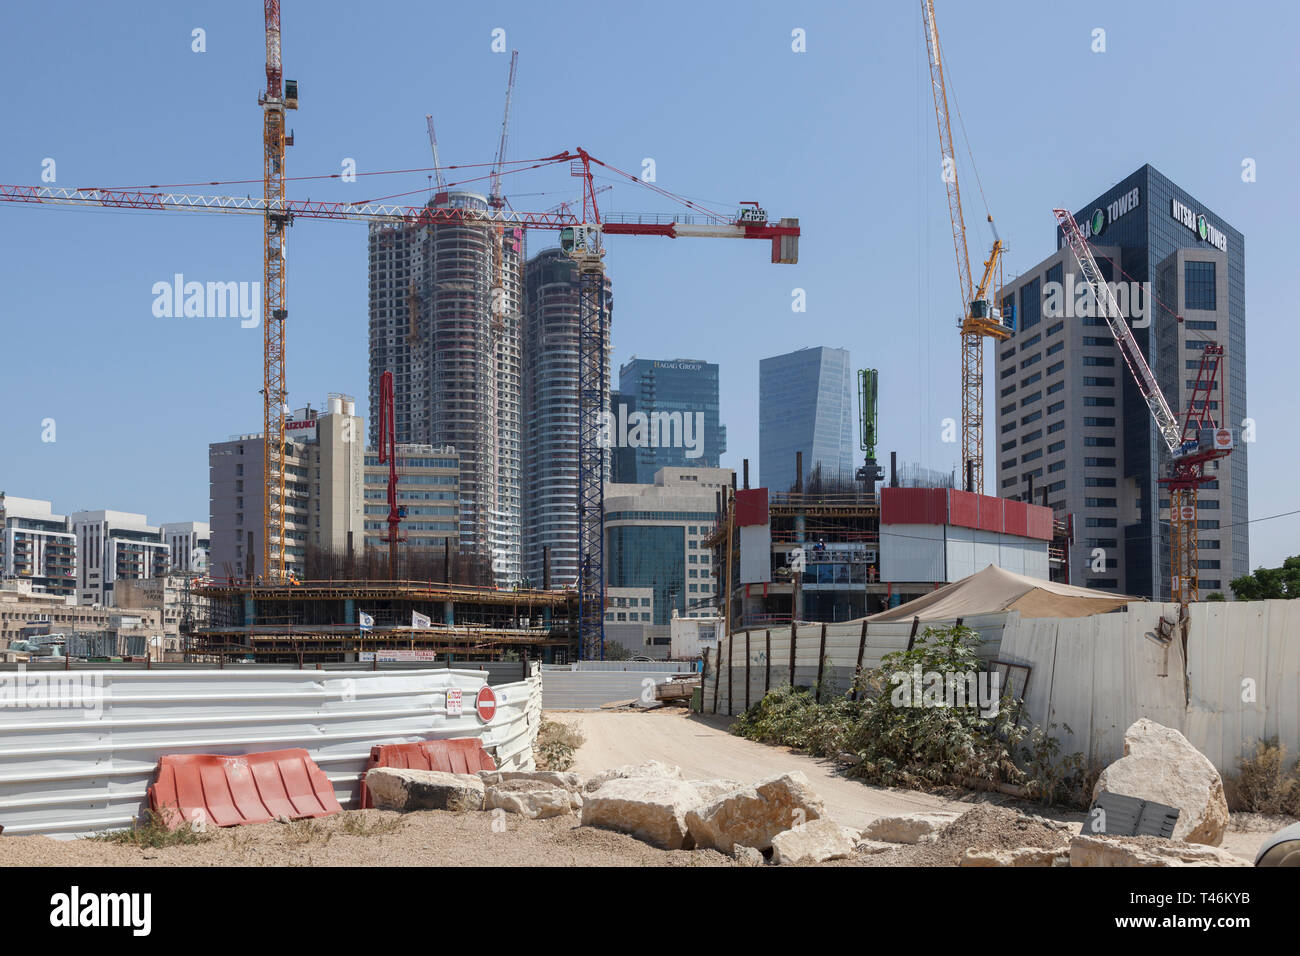 buildings under construction, Tel Aviv, Israel Stock Photo